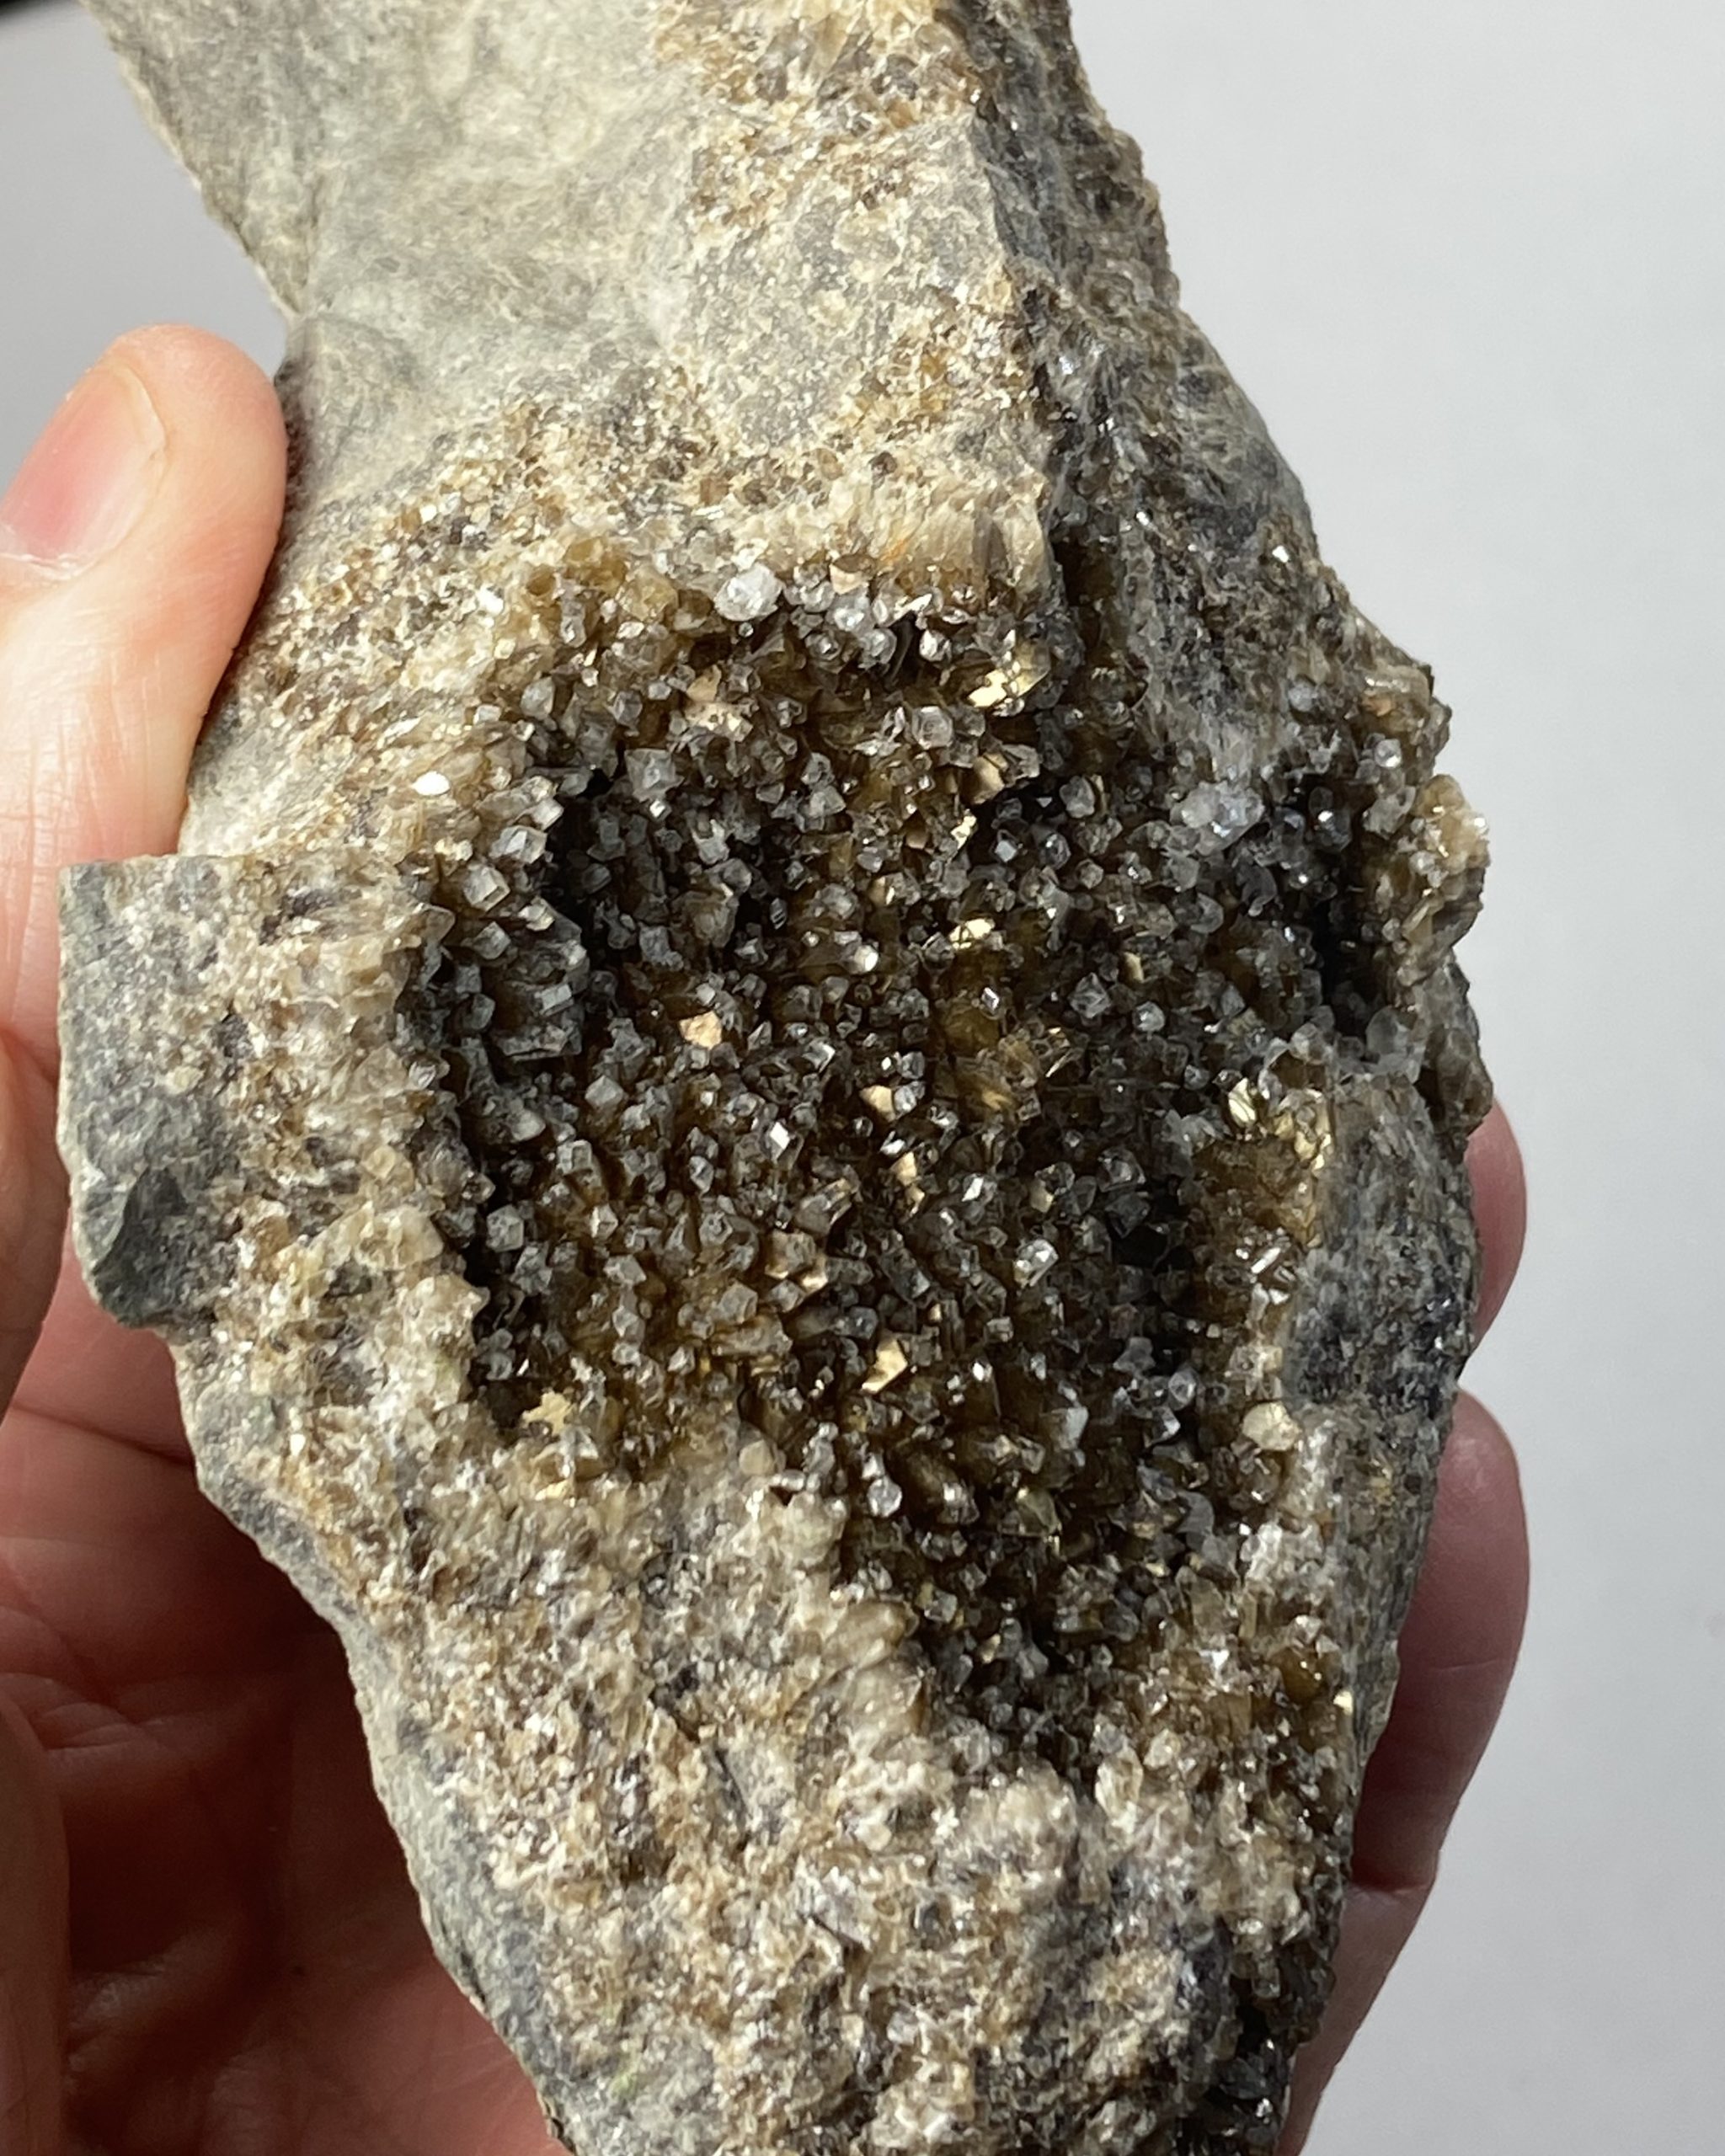 Irridescent fluorite and calcite